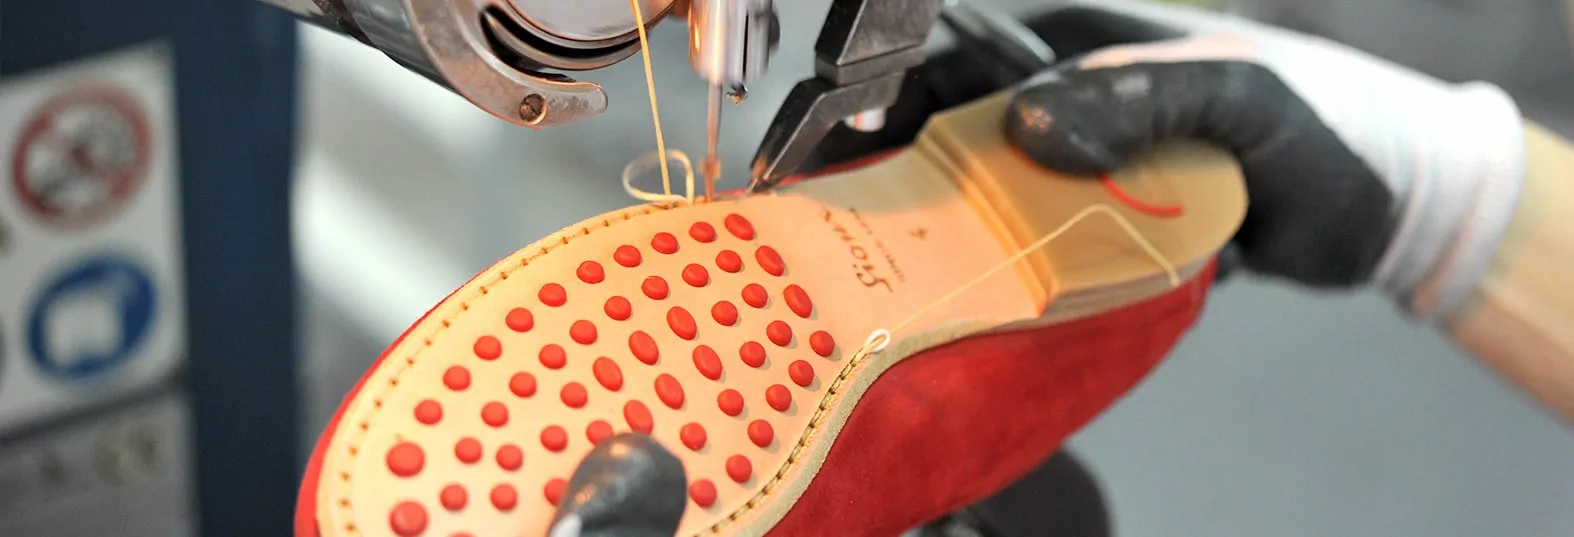 مرحله ماشینکاری در تولید کفش